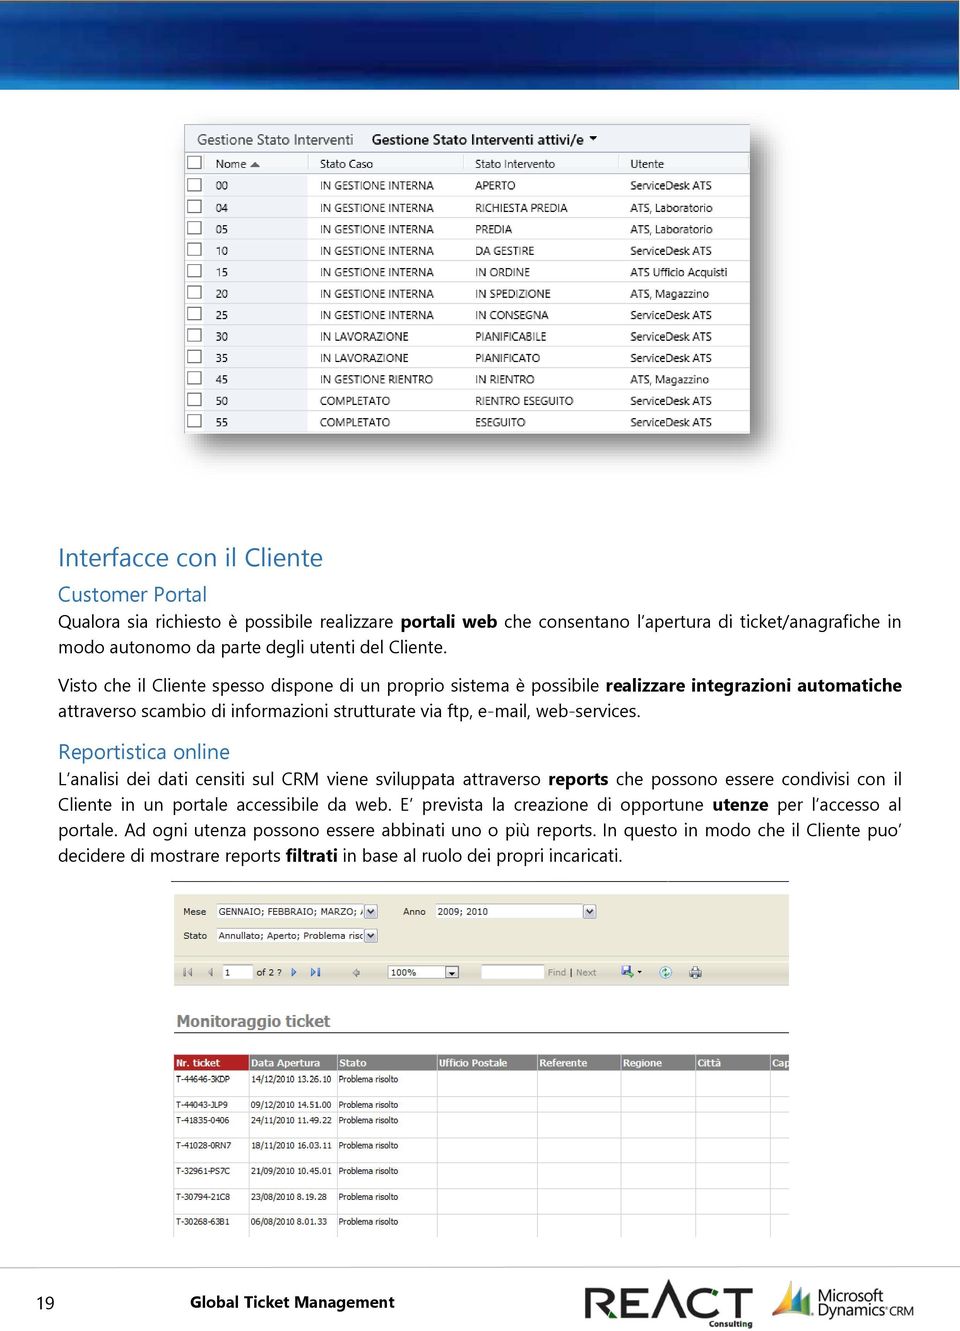 Reportistica online L analisi dei dati censiti sul CRM viene sviluppata attraverso reports che possono essere condivisi con il Cliente in un portale accessibile da web.